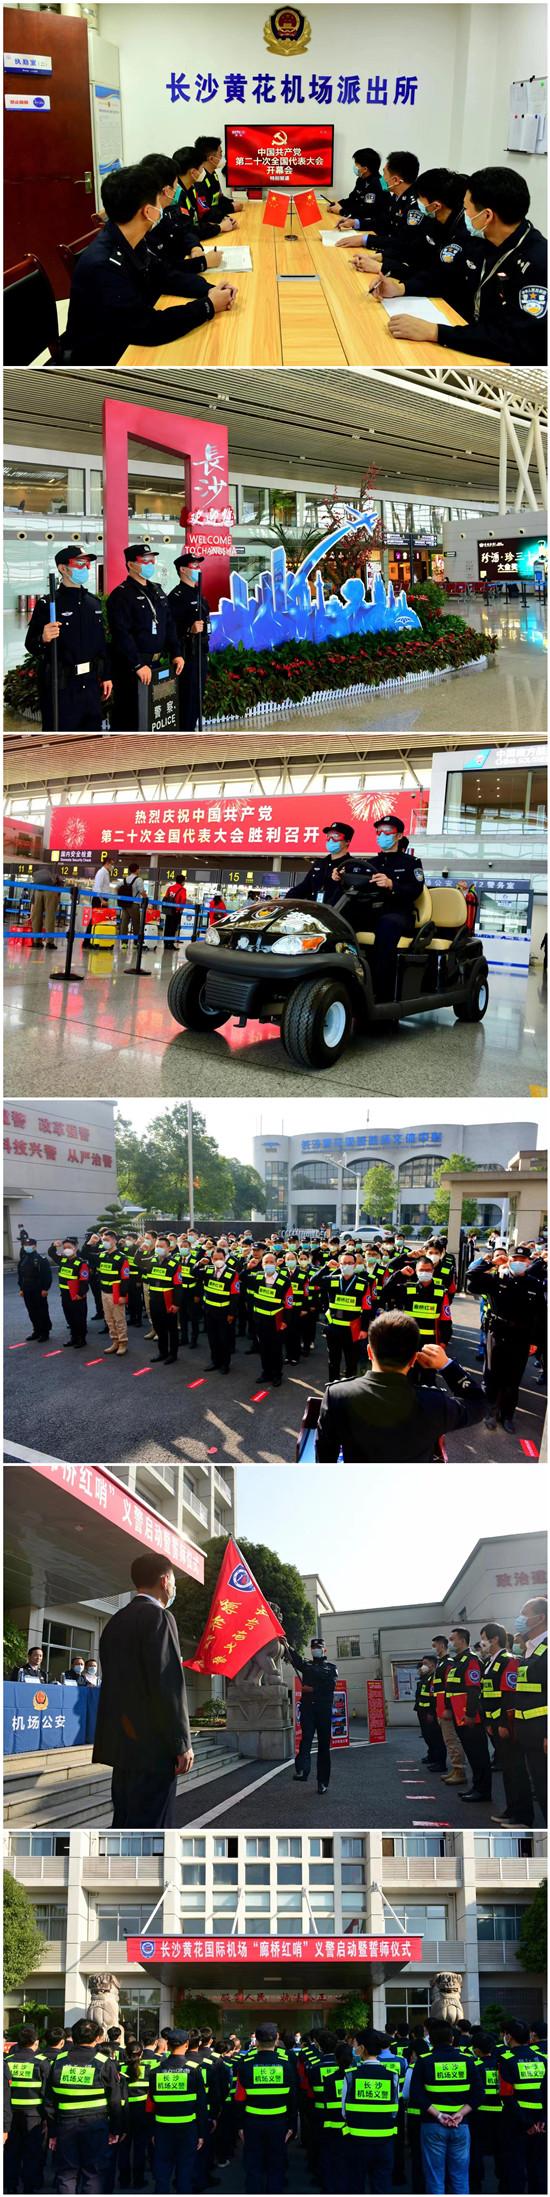 黄花国际机场廊桥红哨义警队伍正式成立